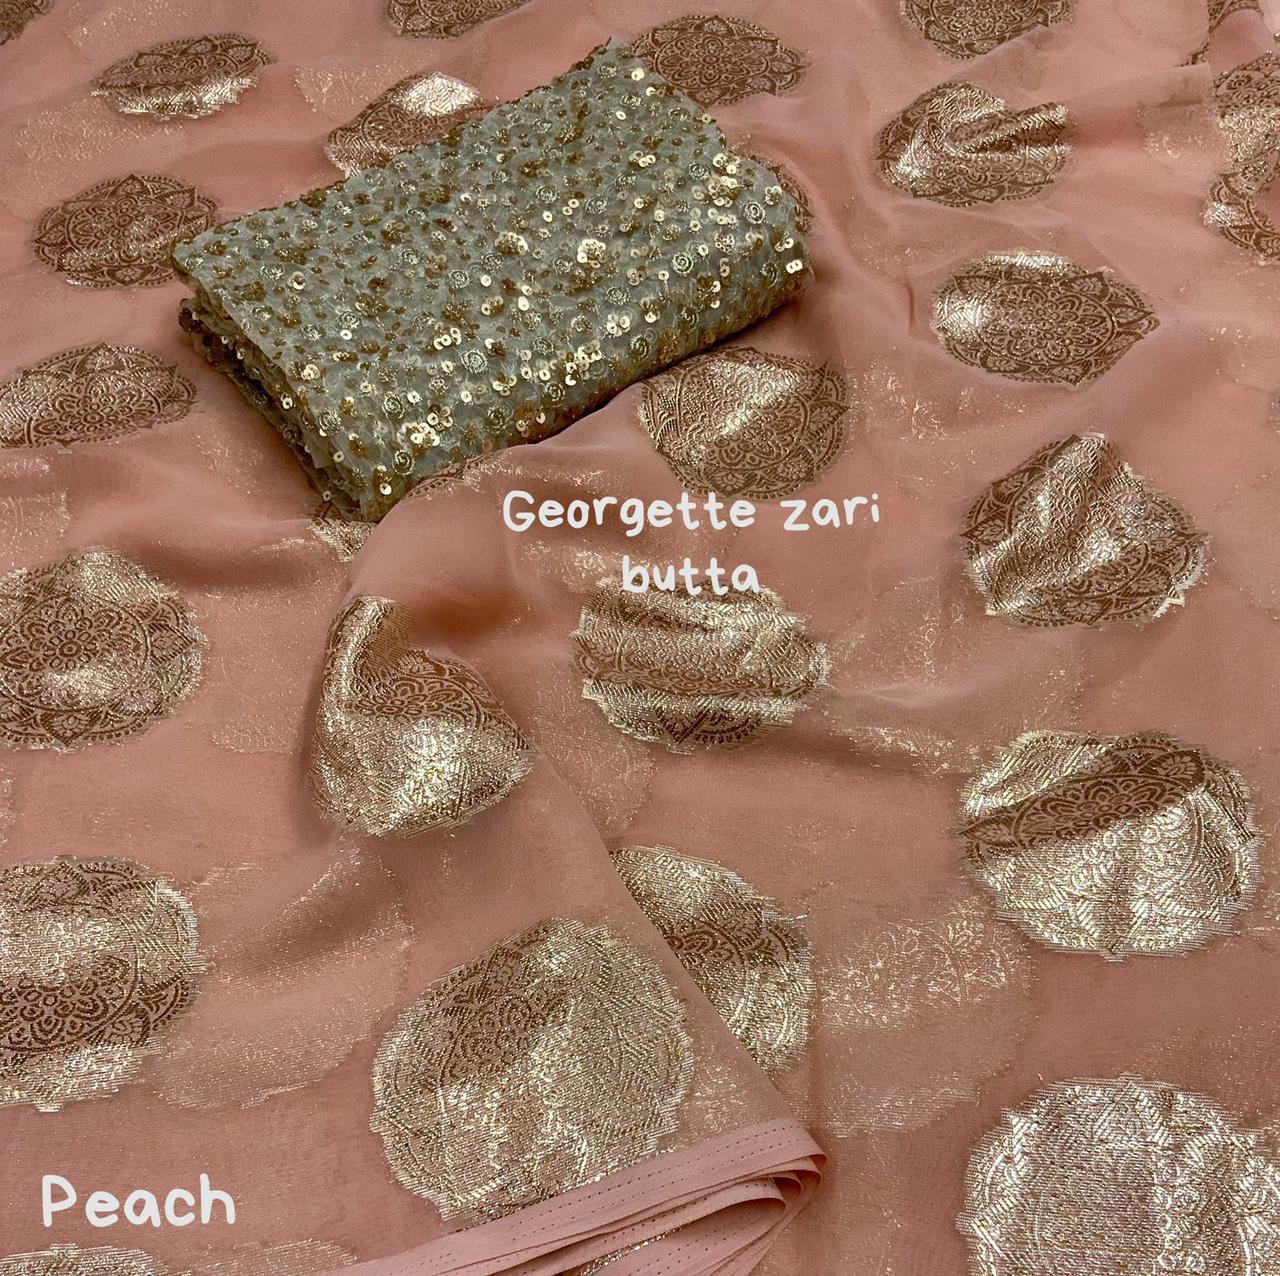 Pure Georgette SareeÂ with gold zari weaving motifsÂ - Peach